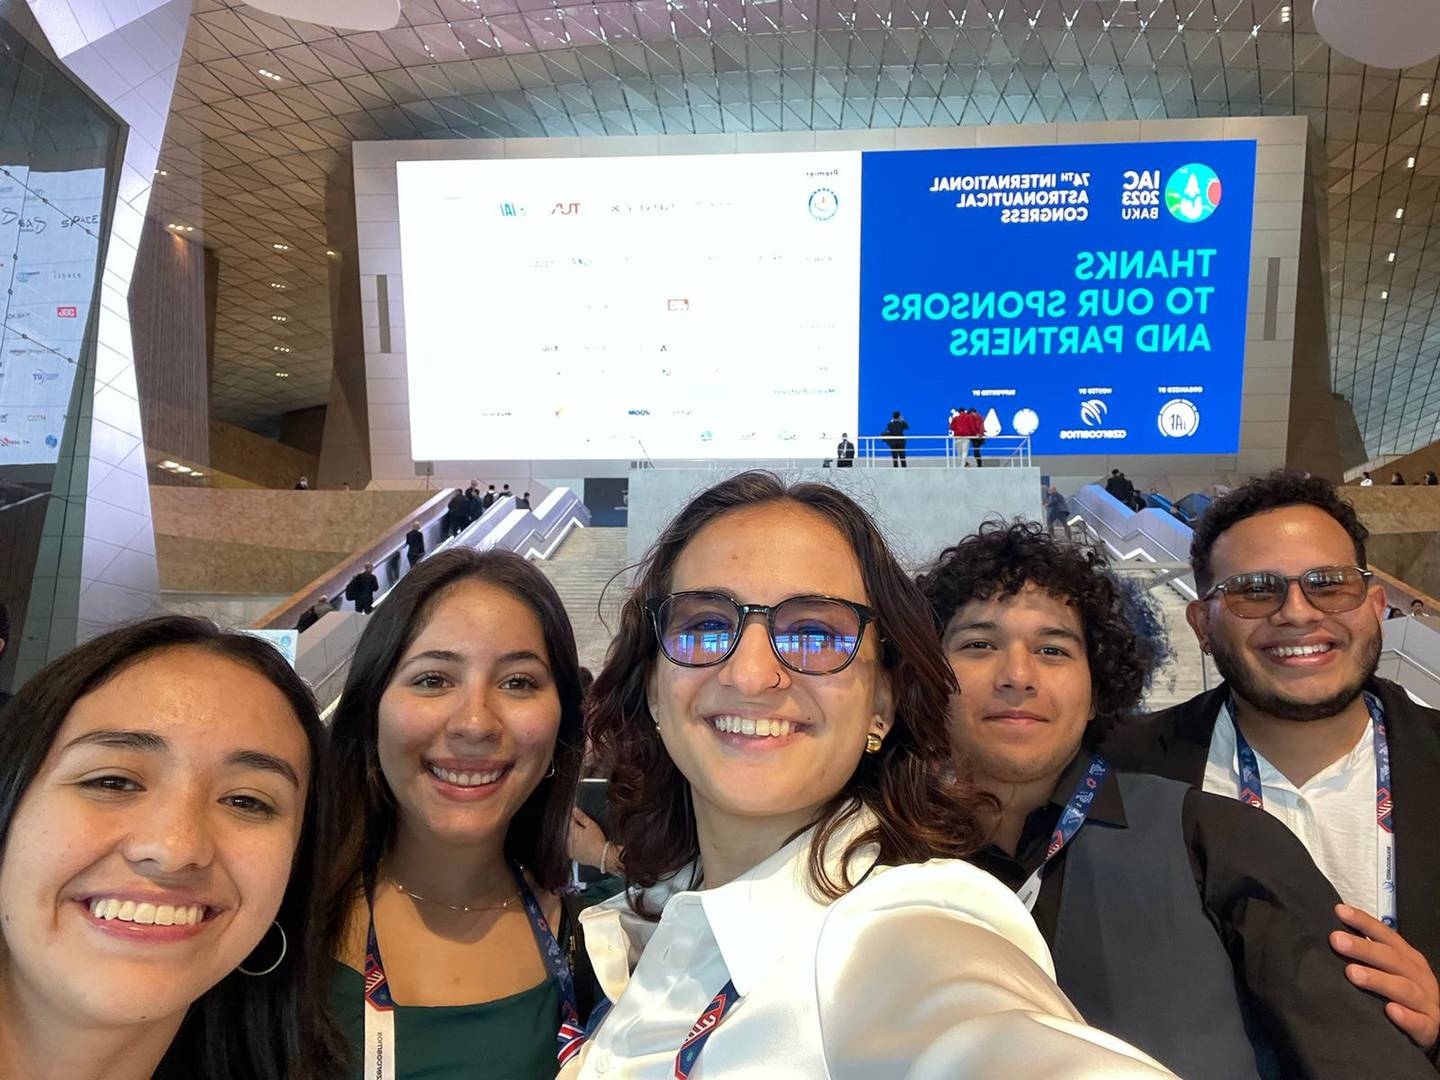 Mariana Salazar Ulate y sus compañeros de del grupo de Ingeniería Aeroespacial de la UCR lograron recaudar el dinero para viajar al Congreso Internacional de Astronáutica que se realizará en Azerbaiyán.